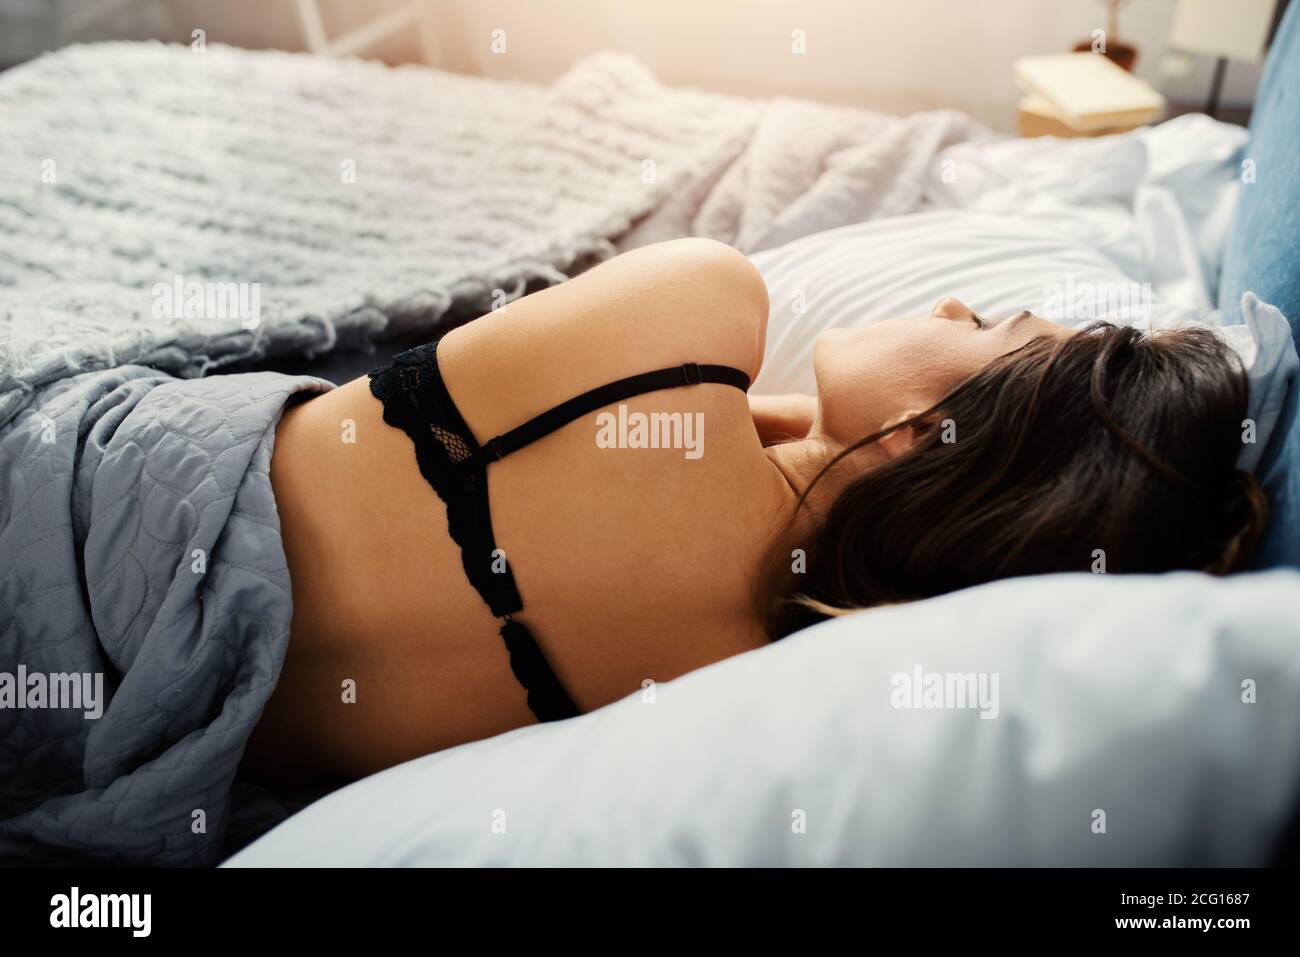 Une fille dort dans un lit confortable pendant la nuit. Concept de détente et de repos. Banque D'Images